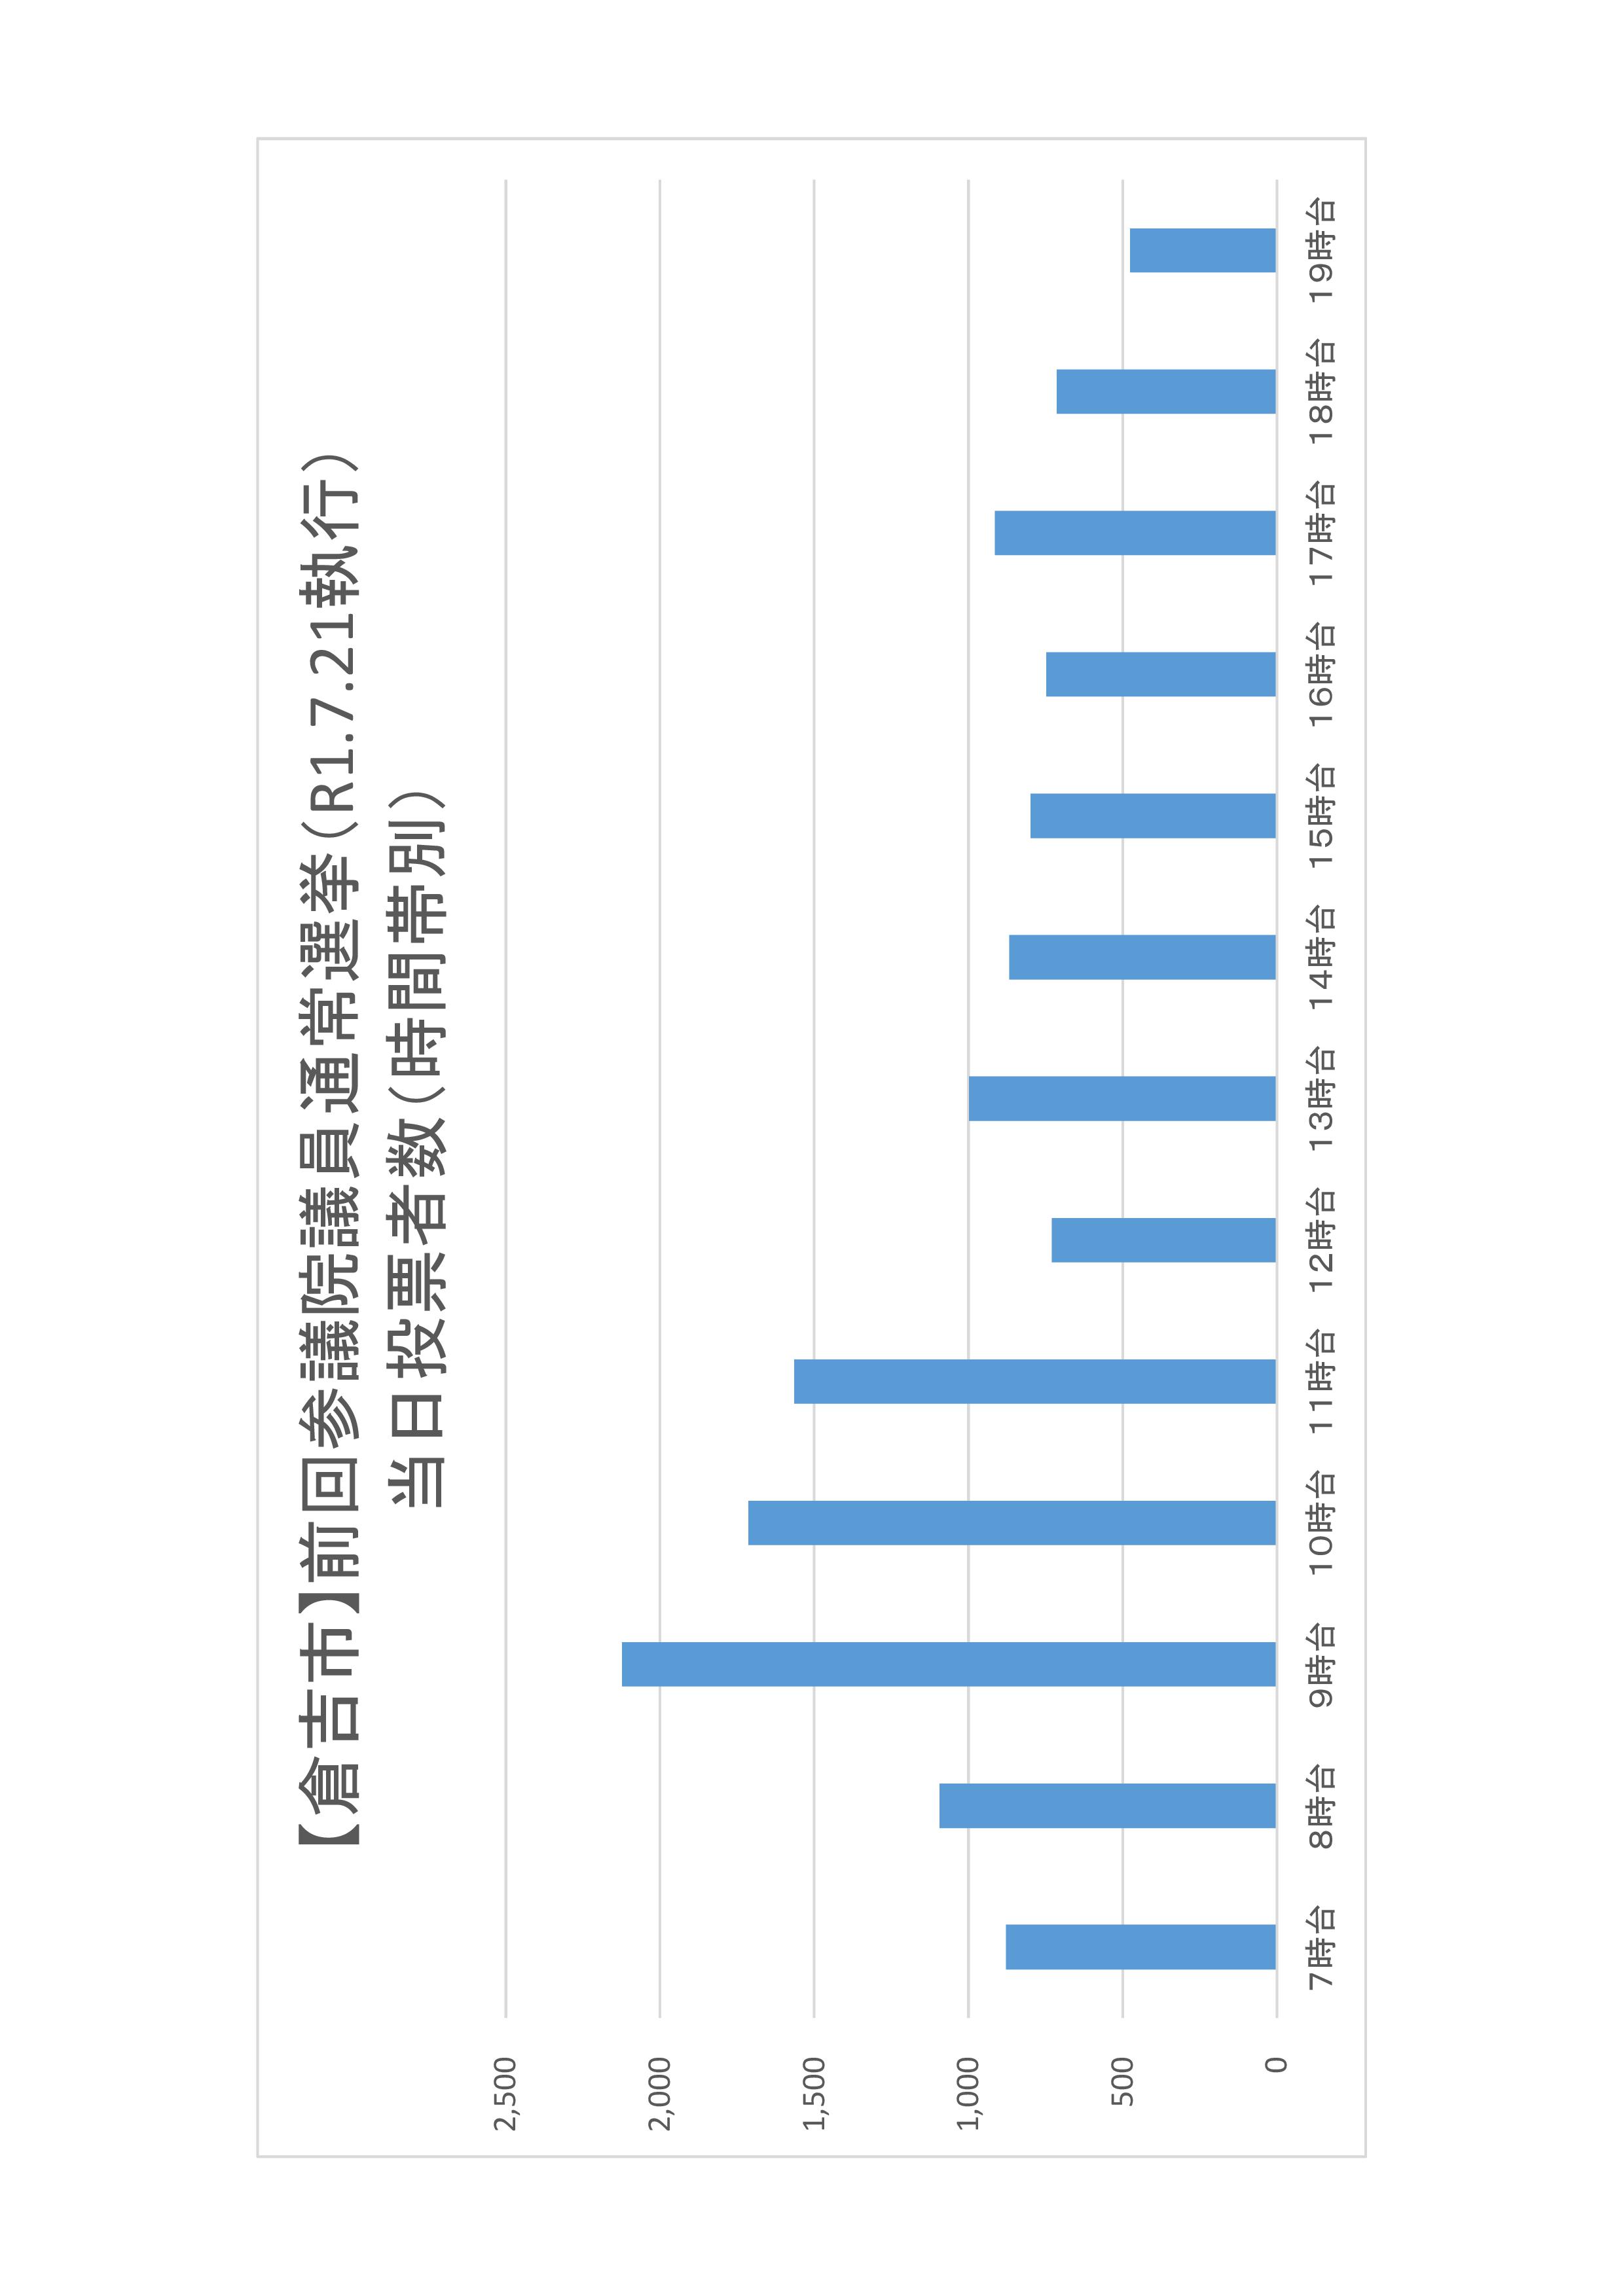 倉吉市の時間帯別当日投票者数のグラフ